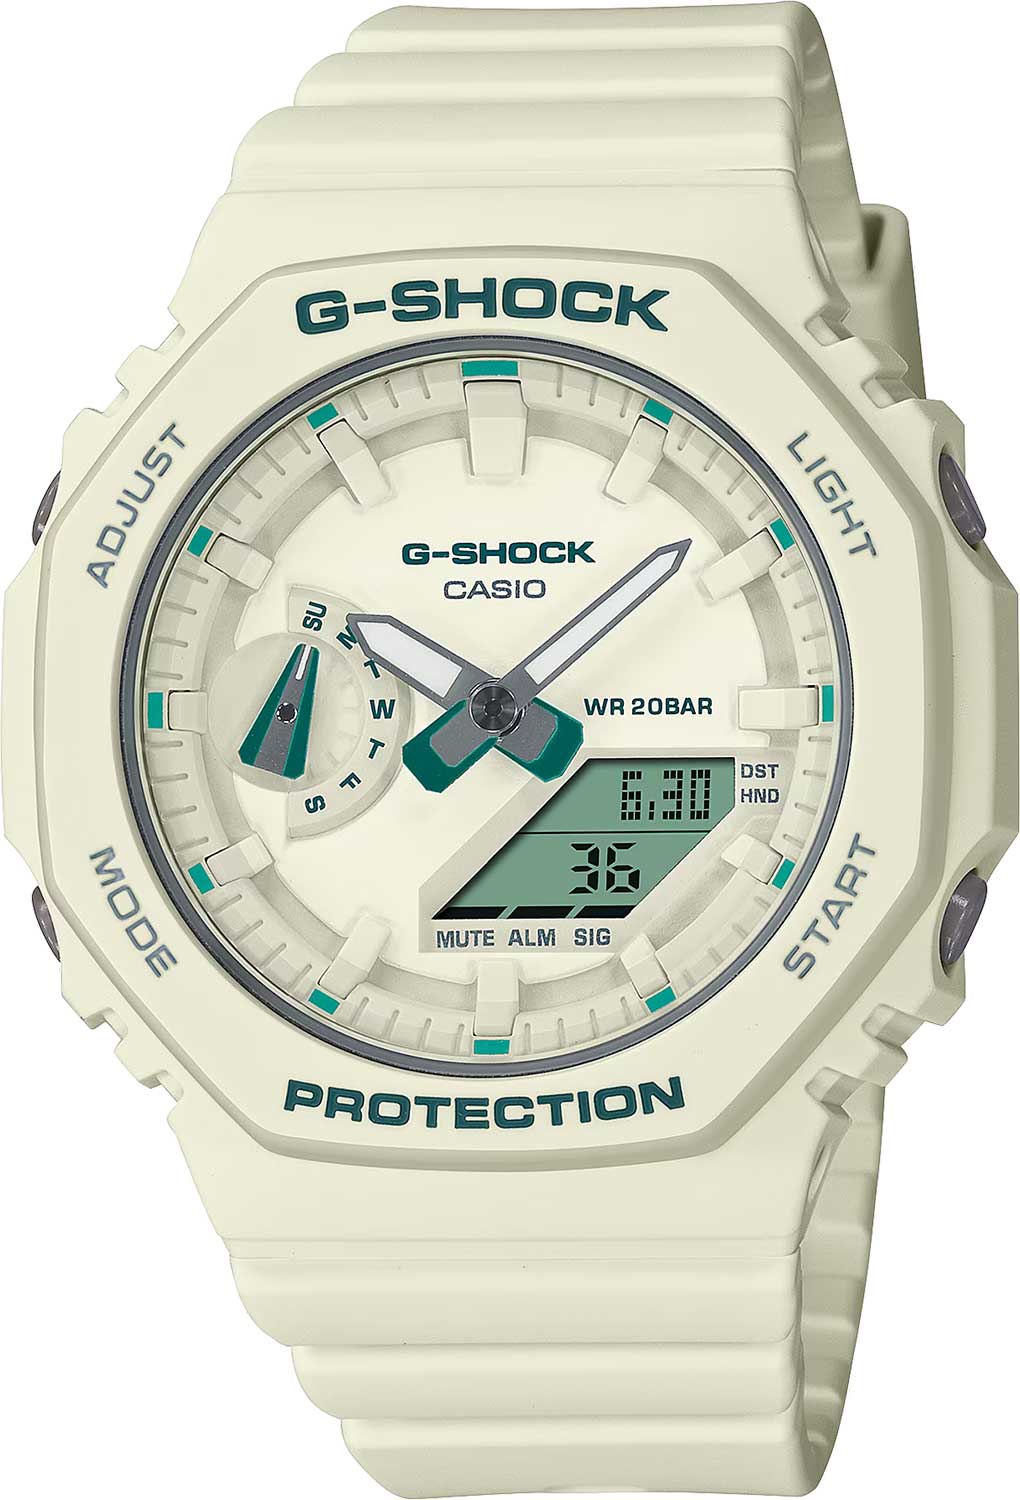 Наручные часы Casio G-SHOCK GMA-S2100GA-7A — купить в интернет-магазине AllTime.ru по лучшей цене, отзывы, фото, характеристики, инструкция, описание